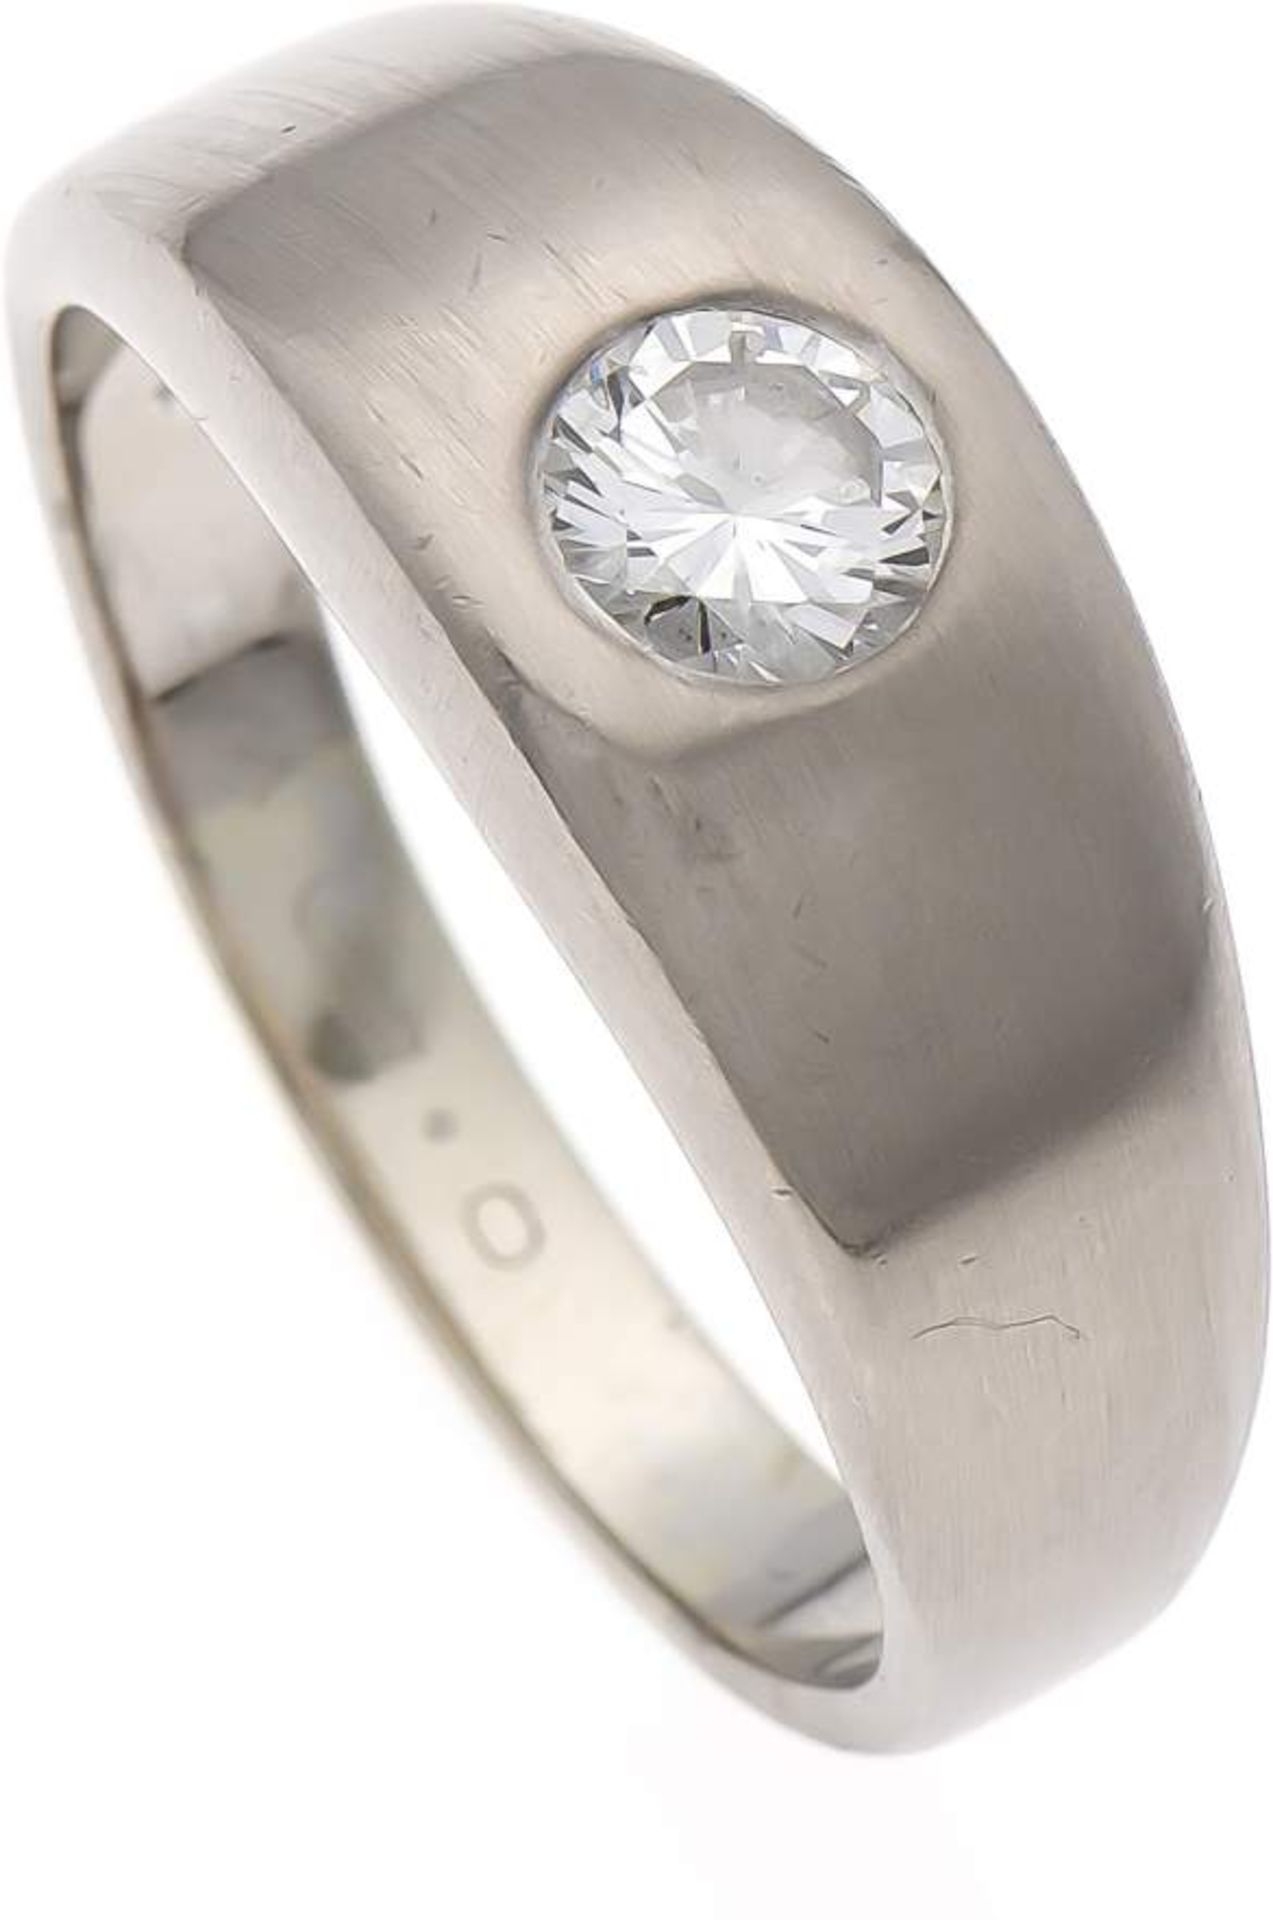 Wempe Brillant-Ring WG 750/000 mit einem Brillanten 0,50 ct Weiß/lupenrein, RG 59, 10,4 g,mit